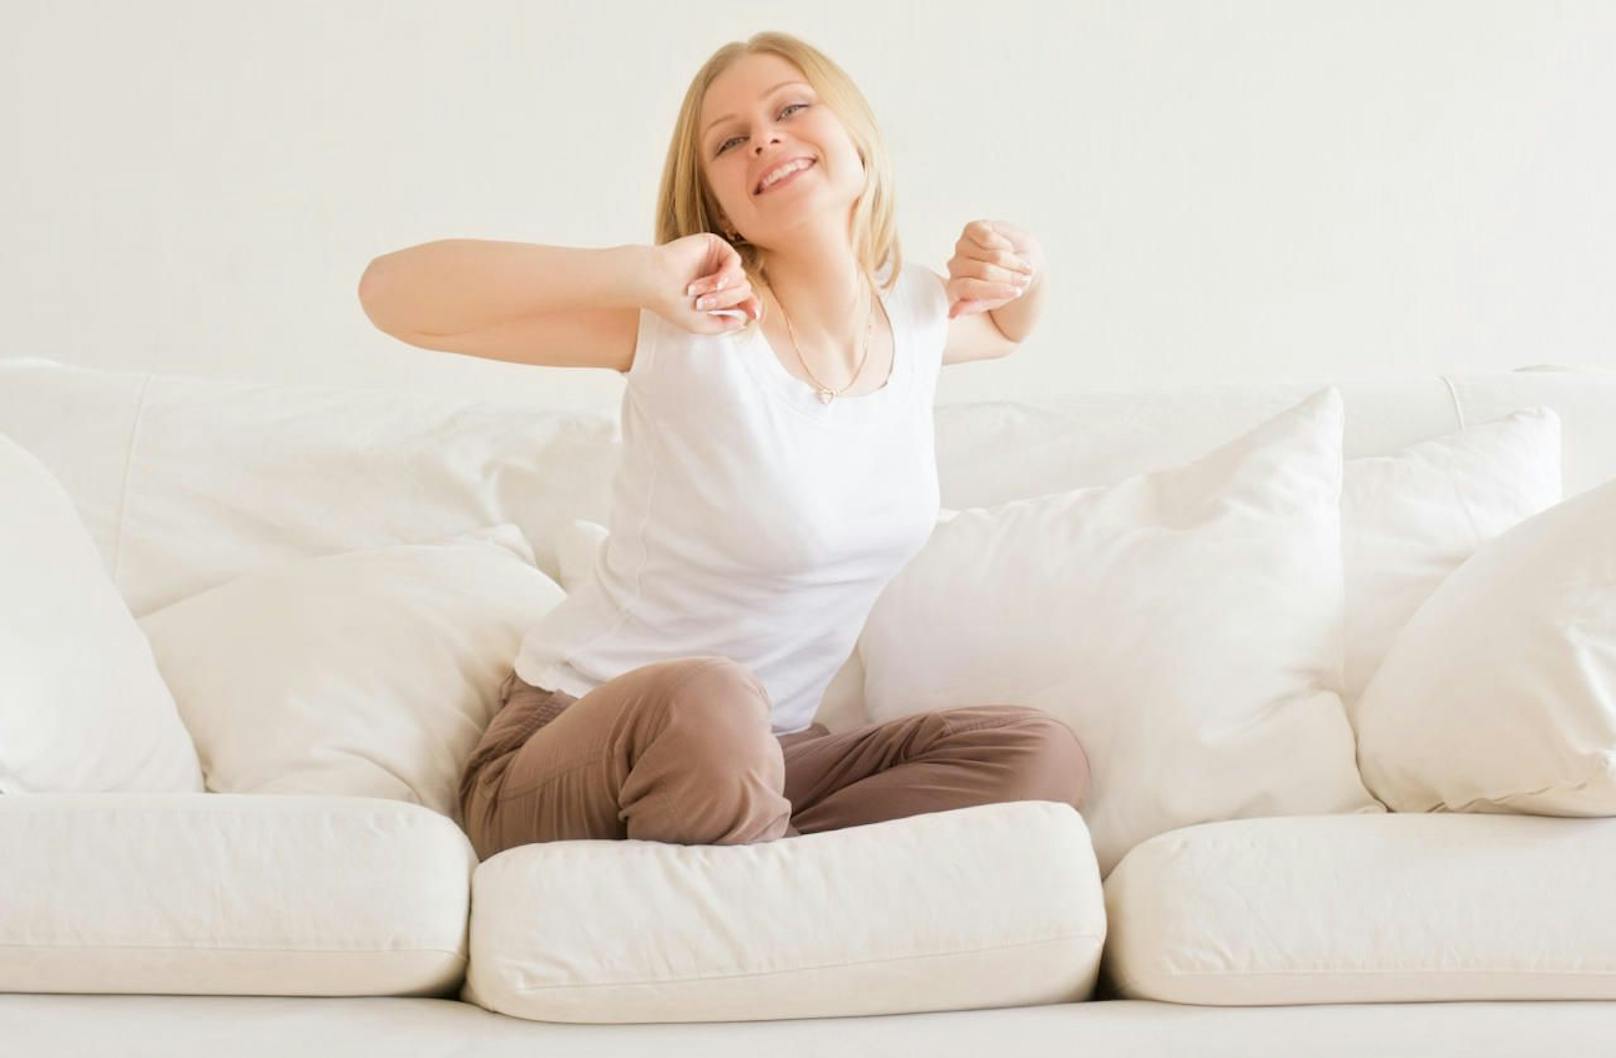 Fitnesstipps für Faule: So klappt das Sofa-Work-Out